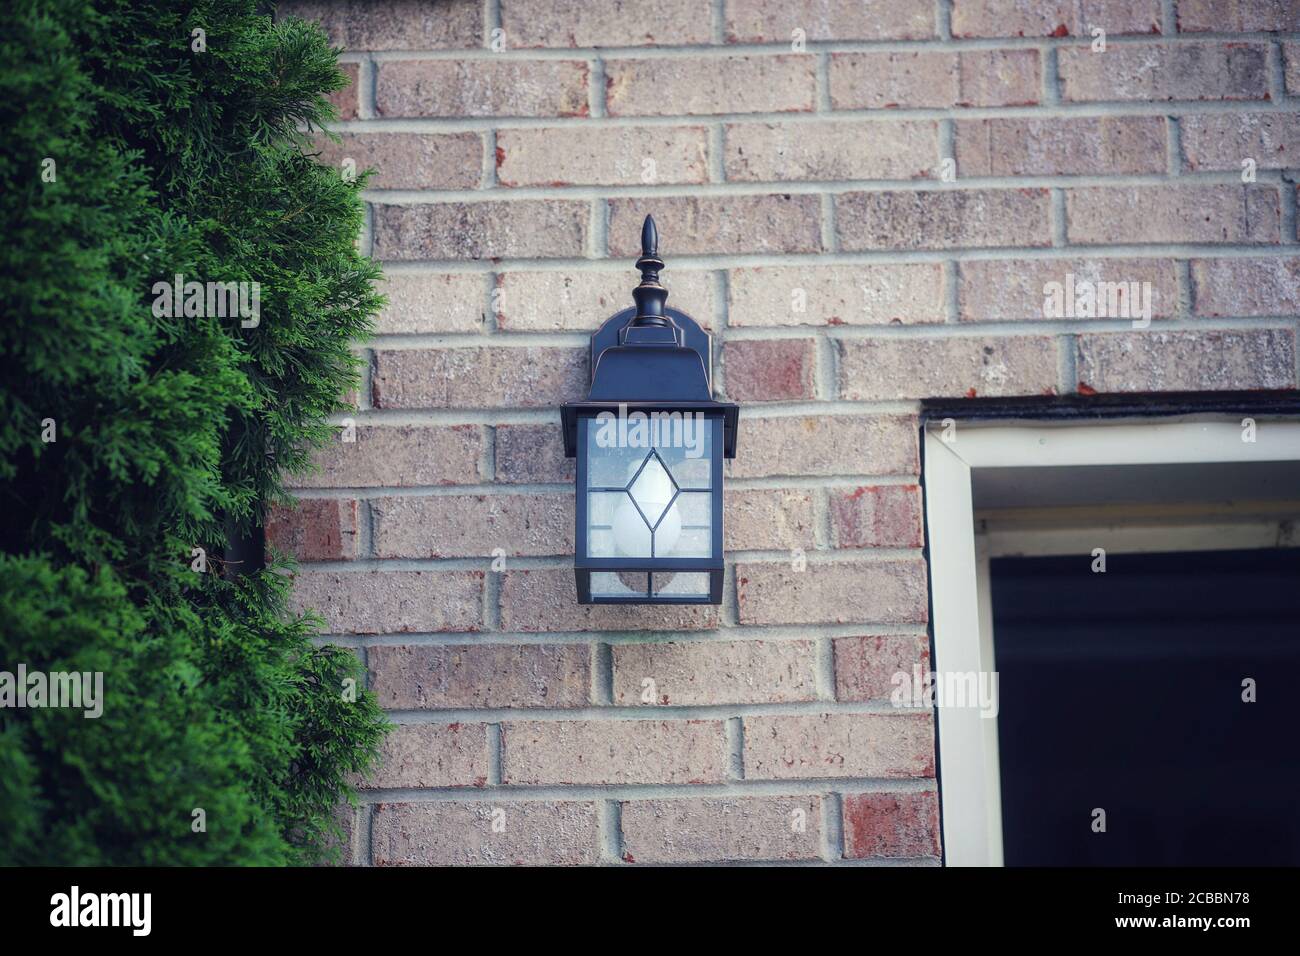 Un dispositivo de iluminación exterior en el exterior de una casa Foto de stock